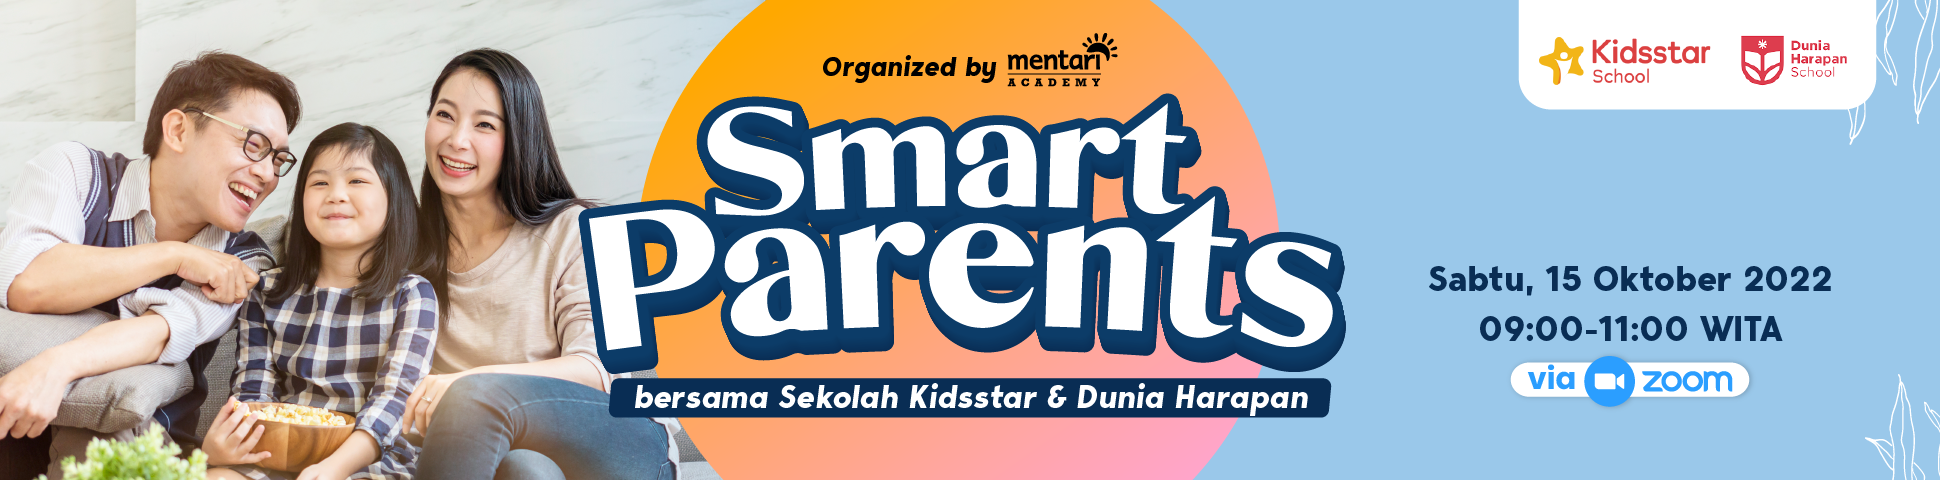 Smart Parents - Kids Star Makassar